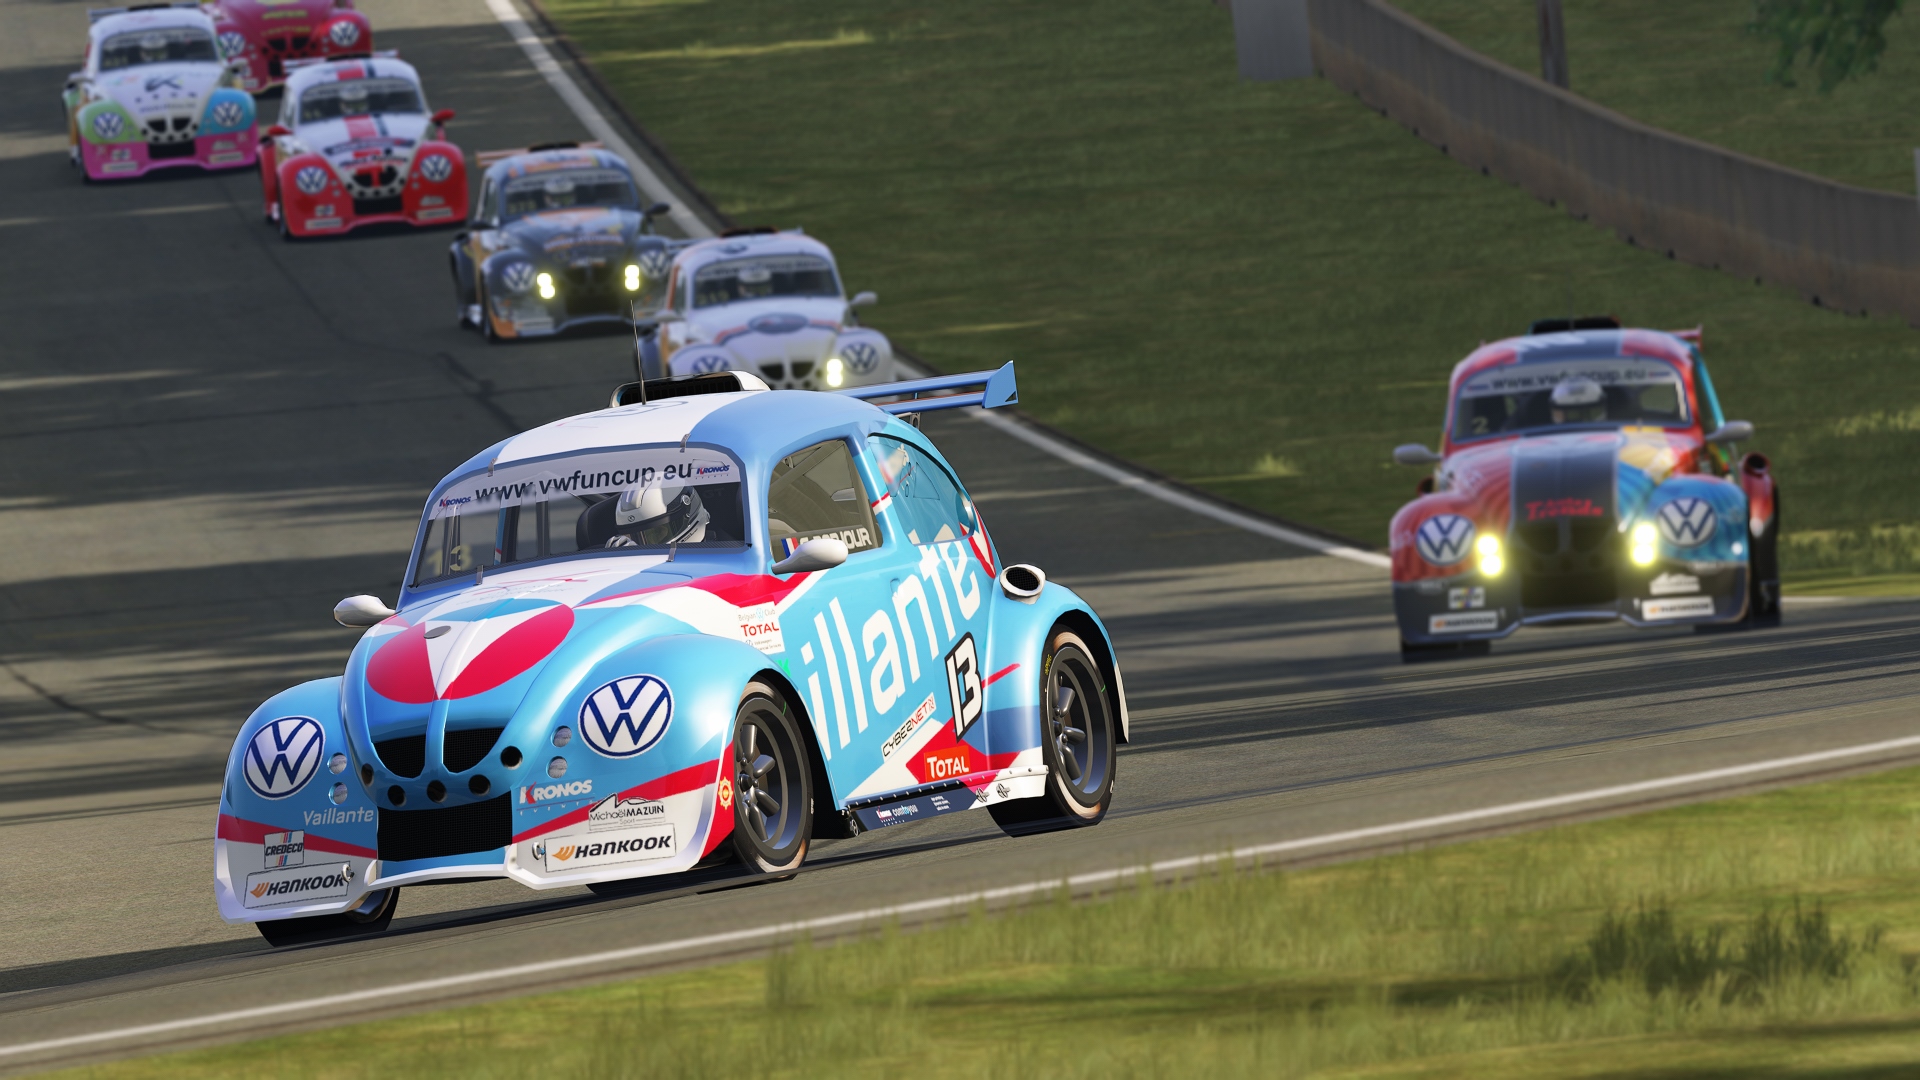 image 2 - De rijders van Vaillant en Leader blikken vooruit op de komende manche van de VW e-Fun Cup